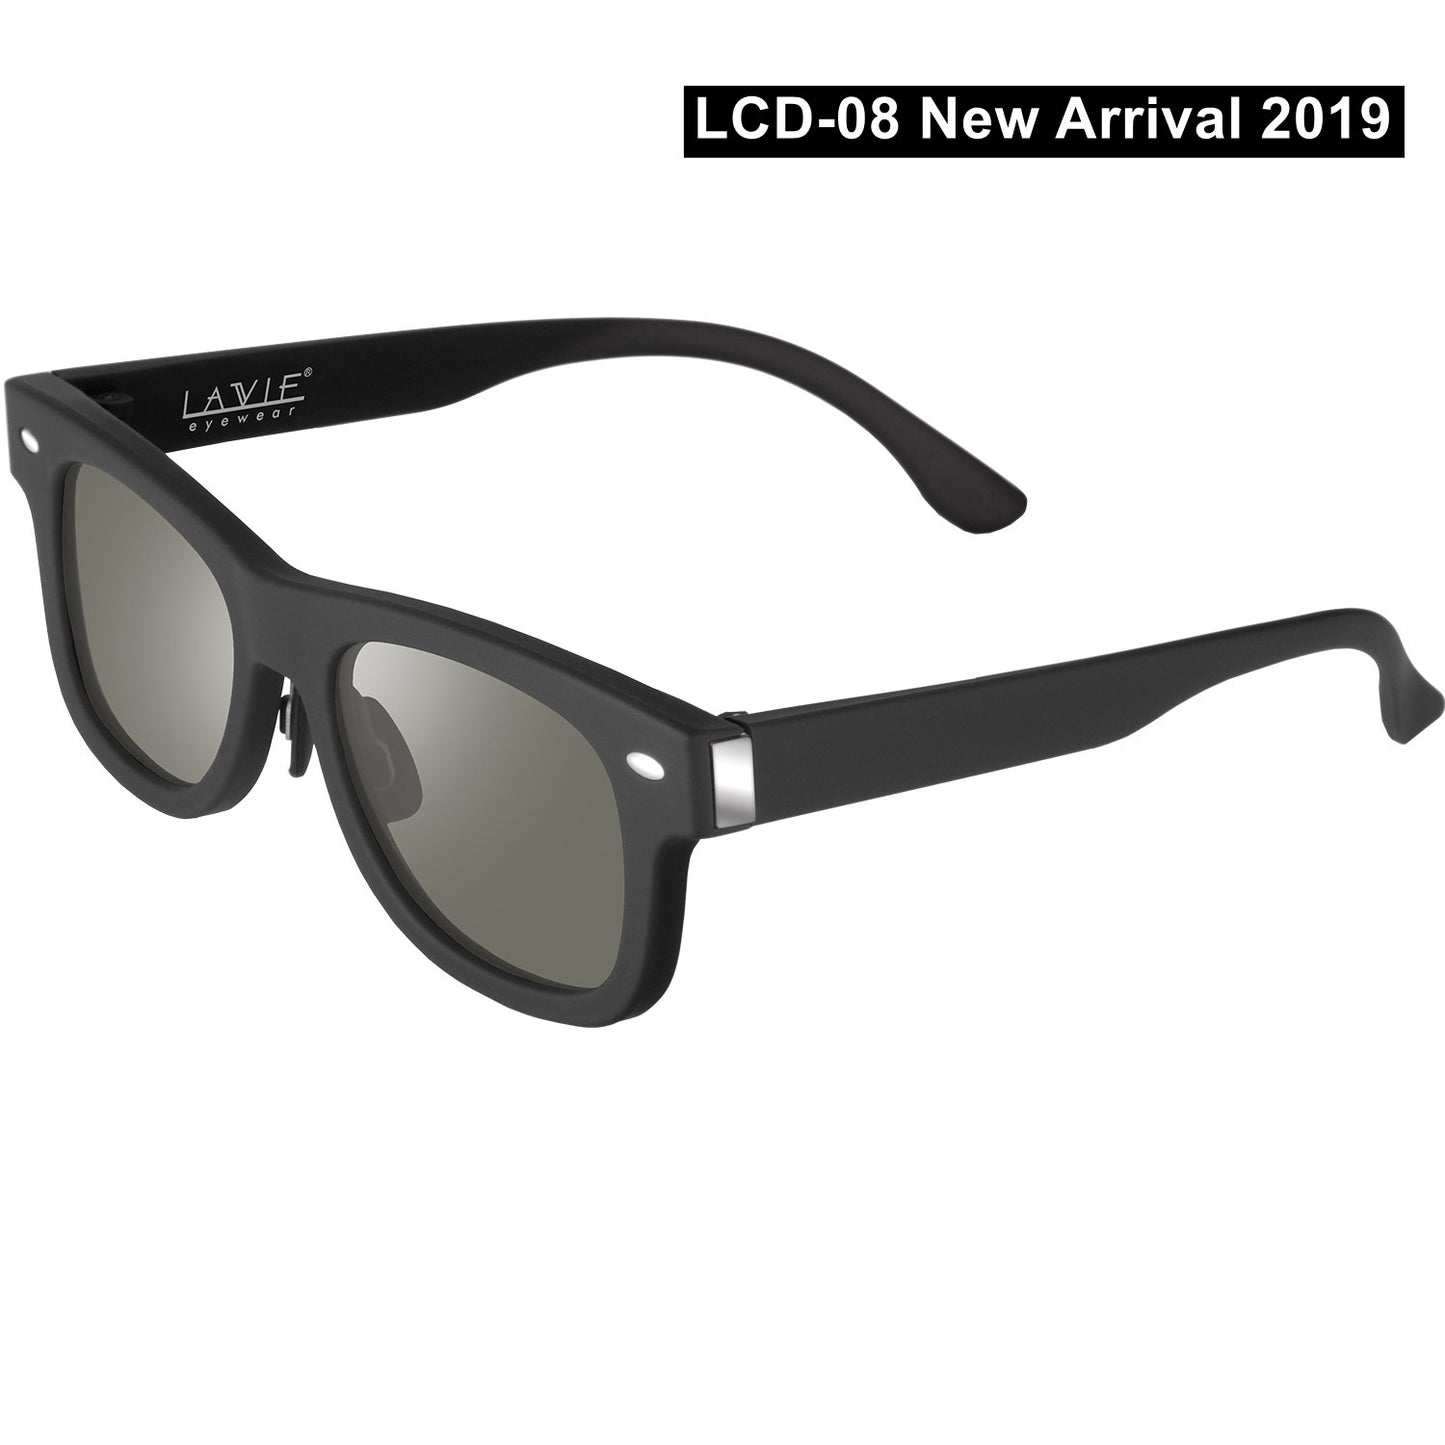 Futuristic LCD Sunglasses